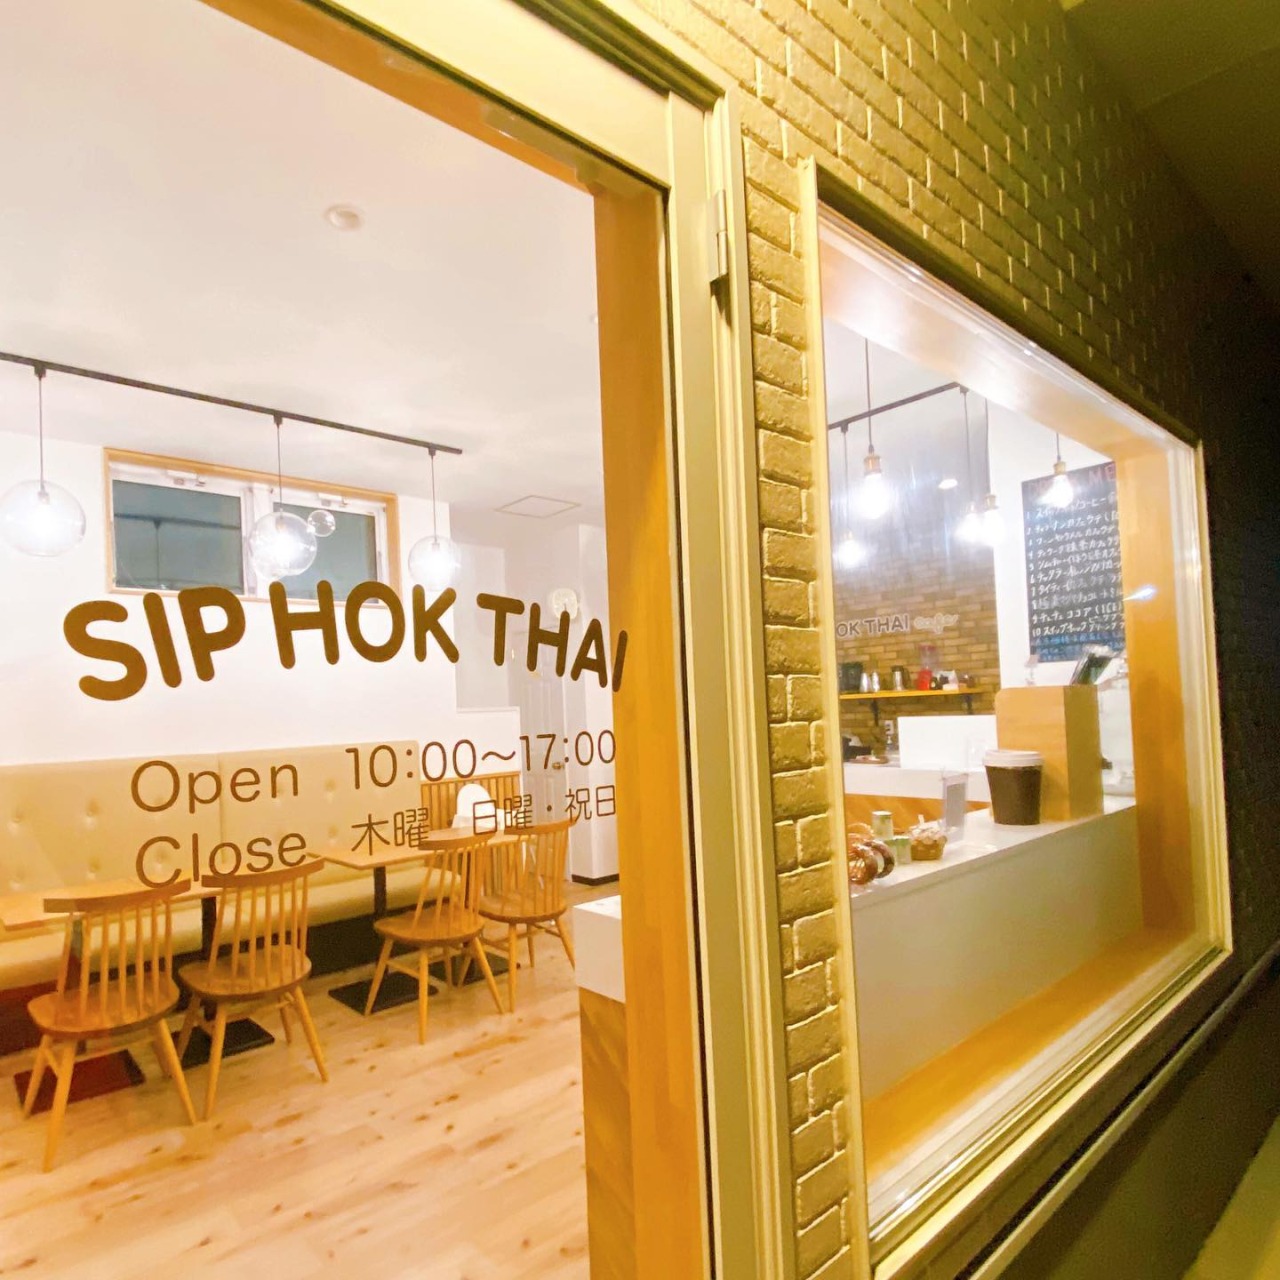 SIP HOK 태국 음식점